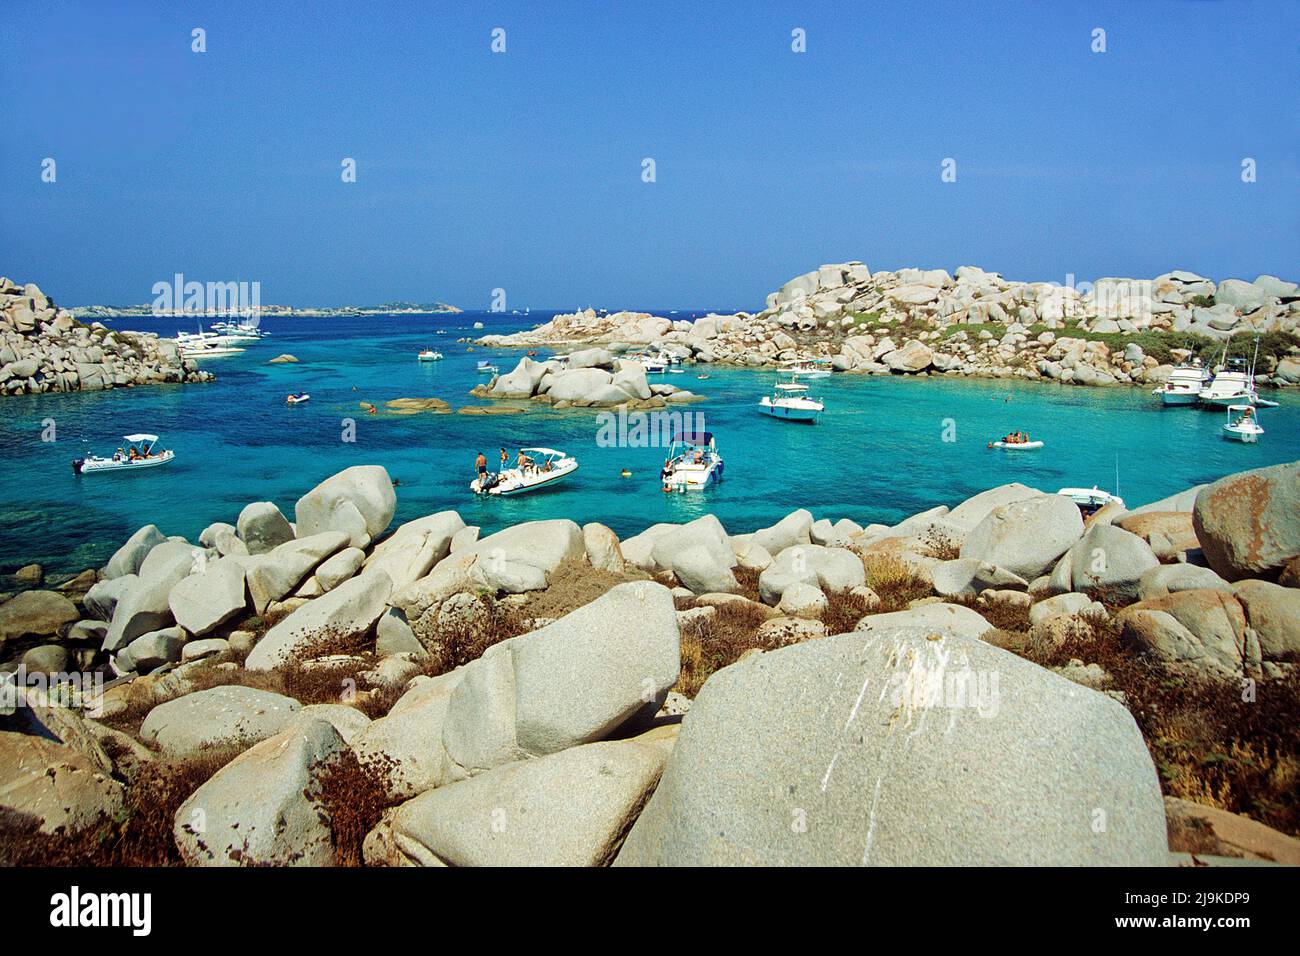 Bateaux à moteur dans un port naturel aux îles Lavezzi, groupe de petite île de granit entre la Corse et la Sardaigne, la Corse, la France, la Méditerranée, l'Europe Banque D'Images